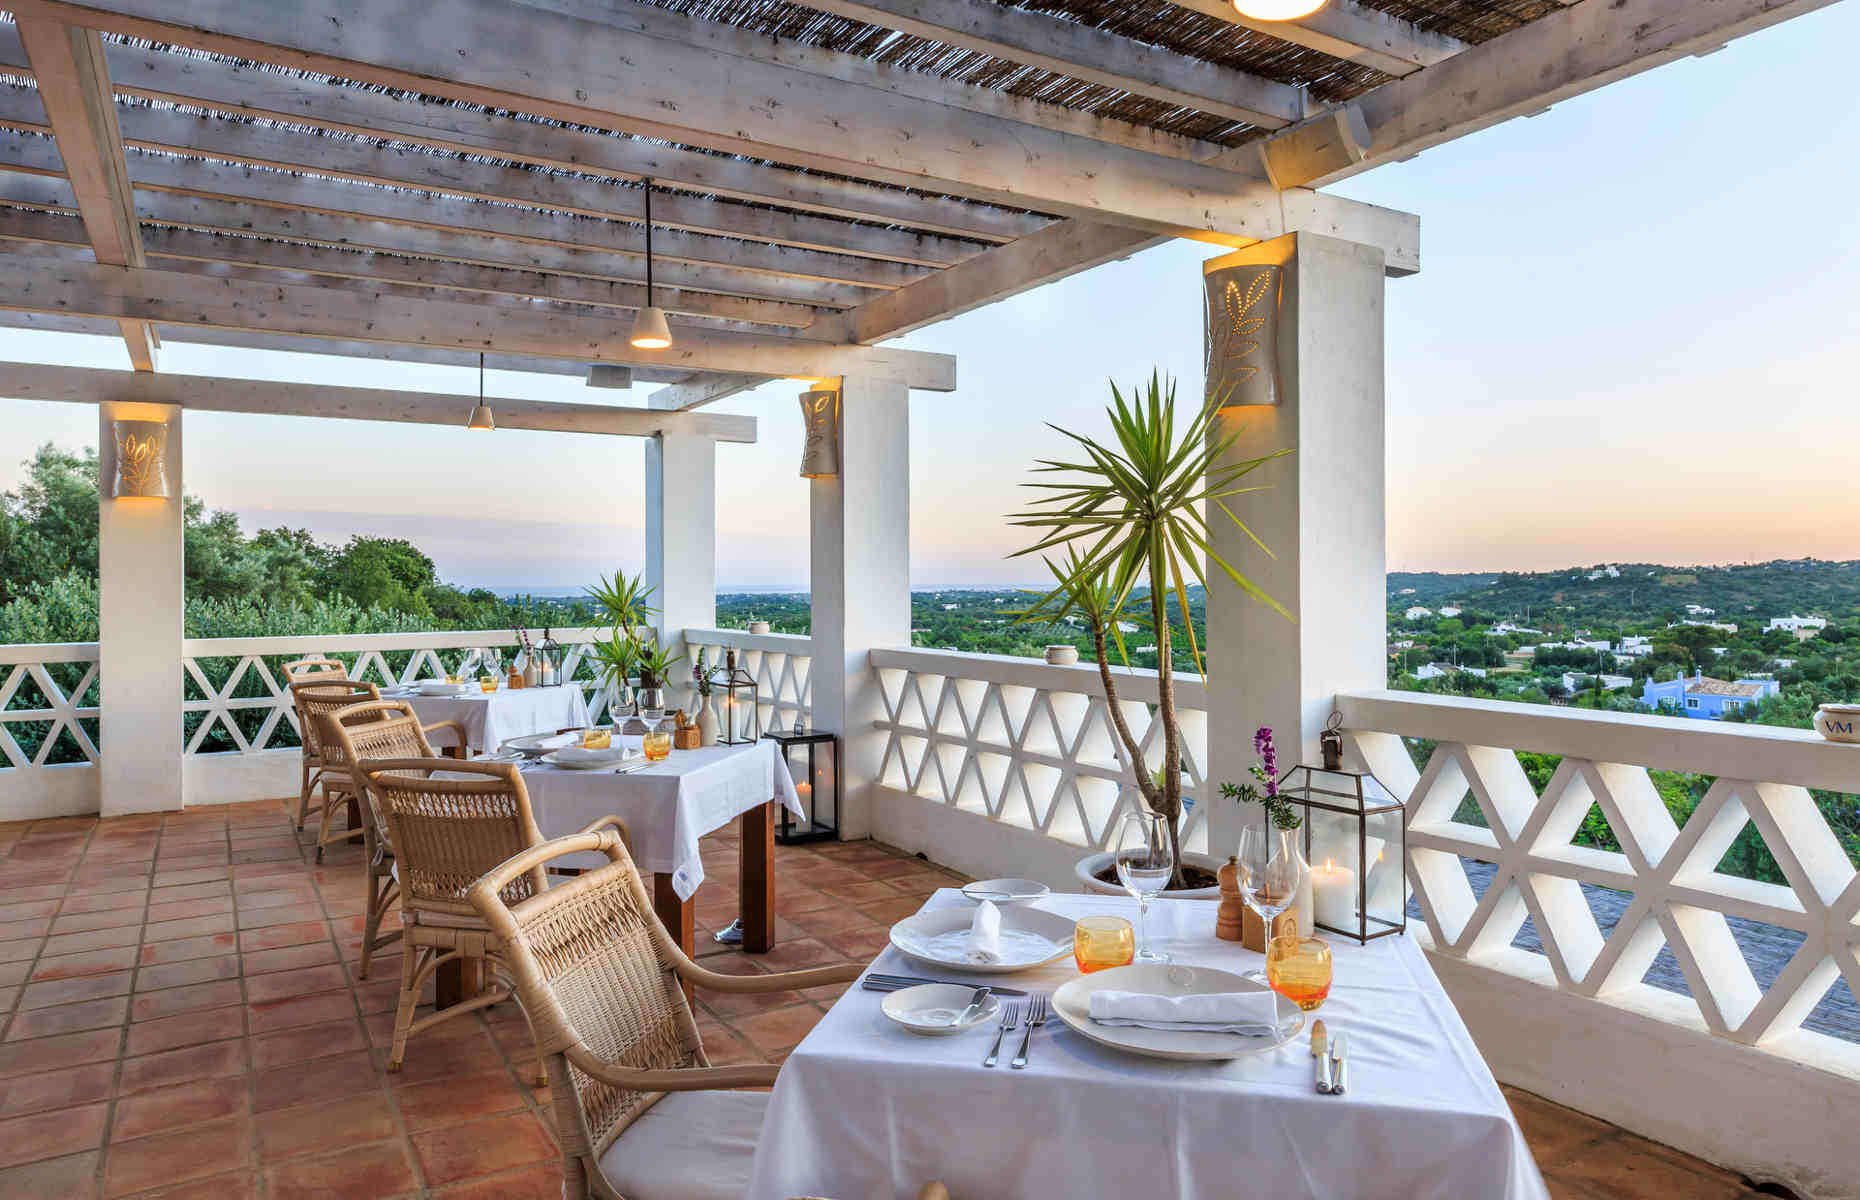 Vila Monte-Laranjal Restaurant's Terrace-Algarve-Portugal